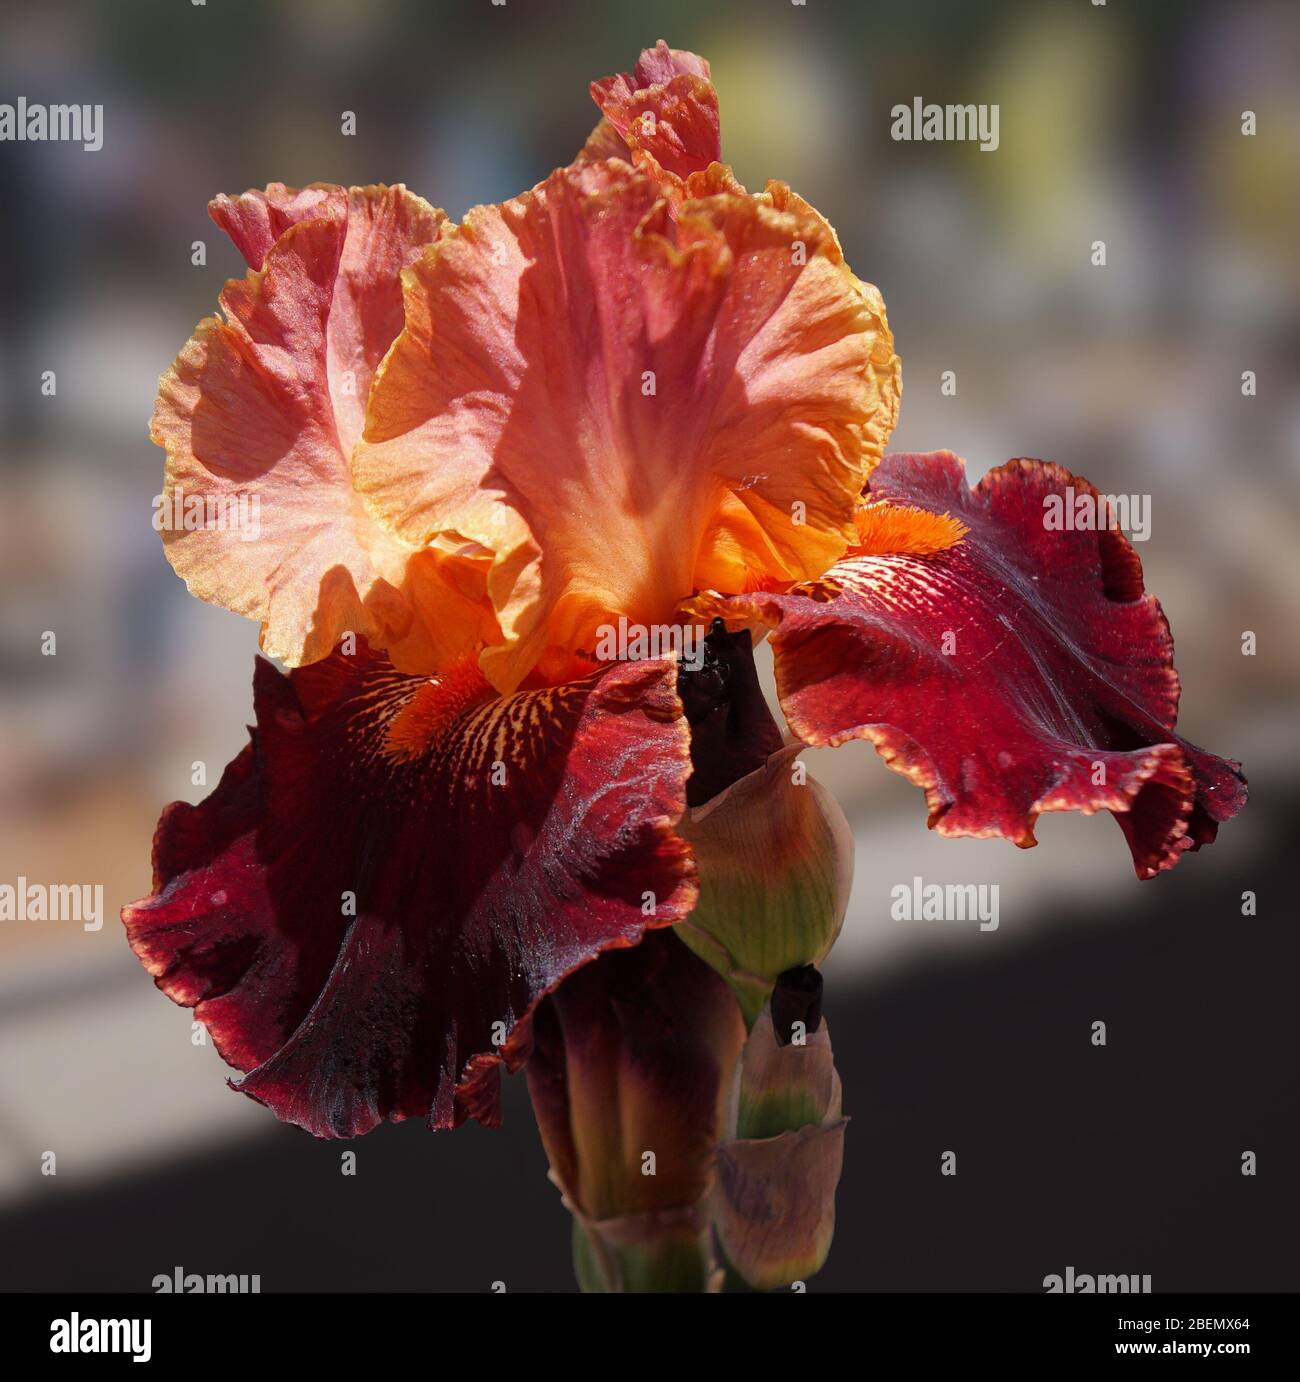 Las profundas cataratas de borgoña de este hermoso iris se desprende dramáticamente por sus brillantes barbas de color naranja y sus oscuros pétalos de melocotón. Foto de stock